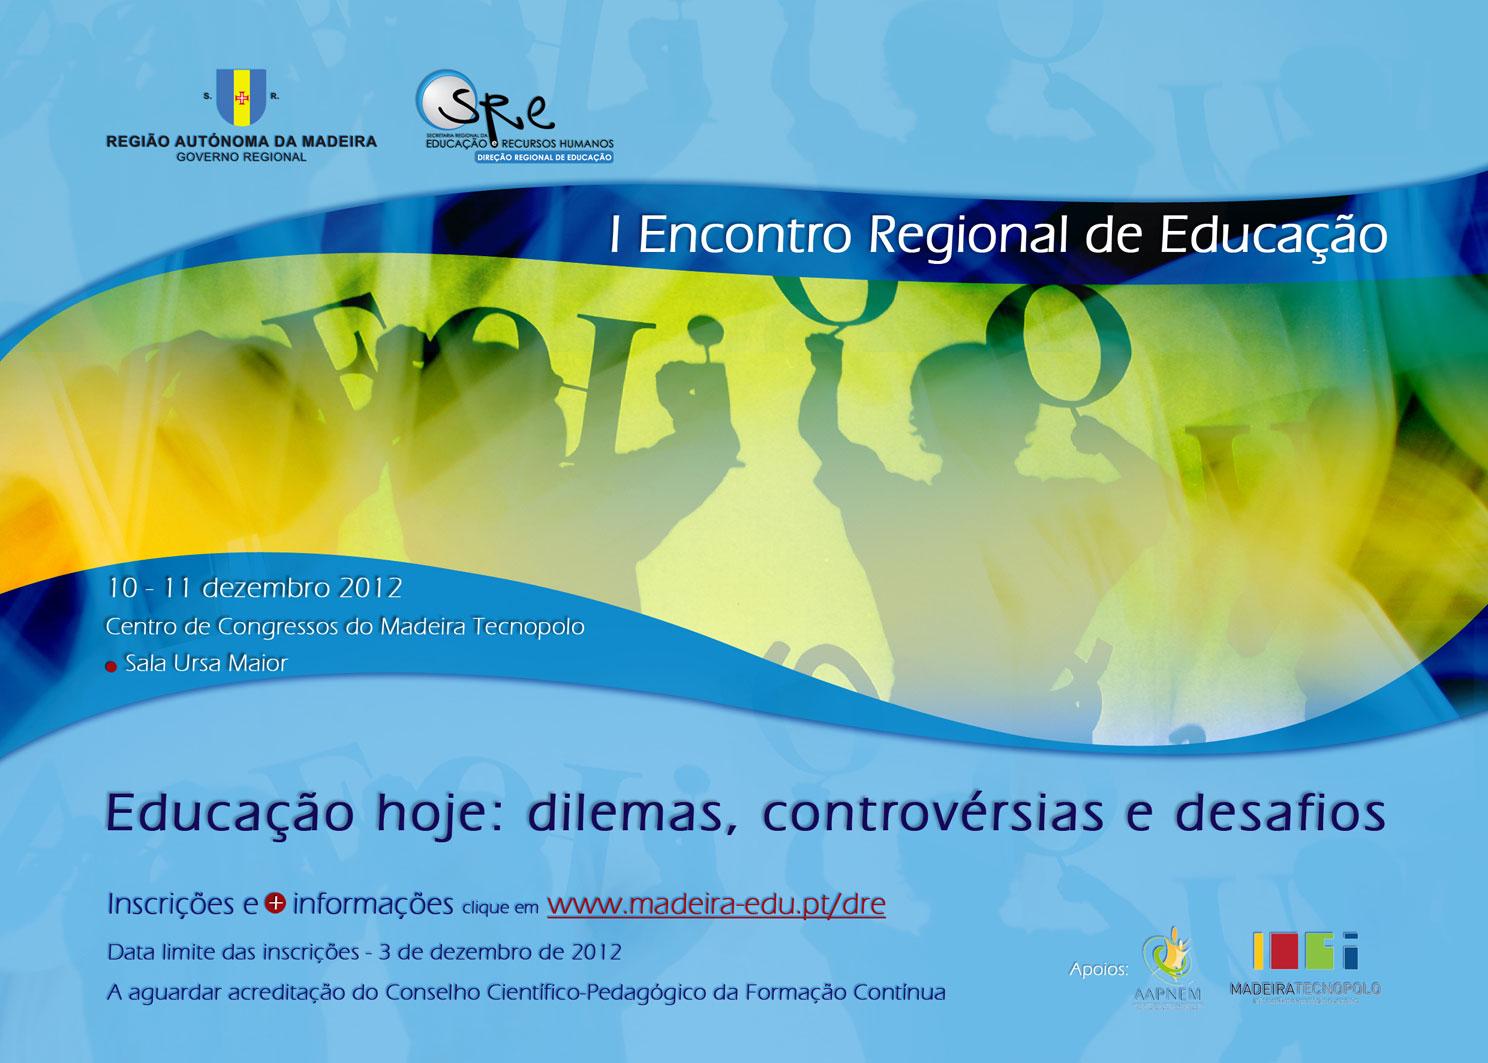 I Encontro Regional de Educação - Educação hoje: dilemas, controvérsias e desafios